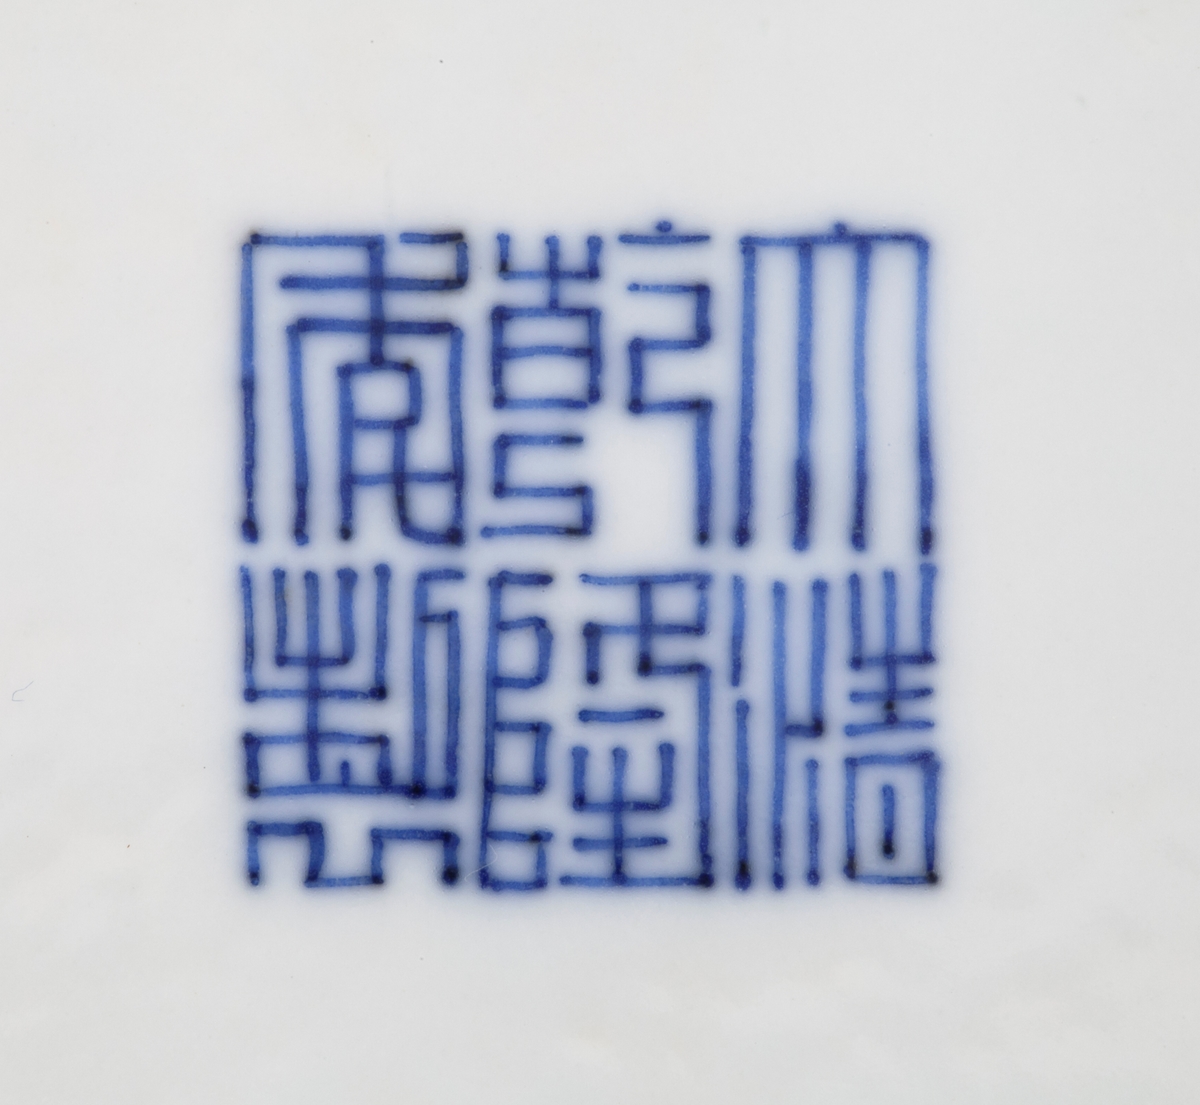 På skålens cavetto finner vi de åtte taoistemblemene som representerer de åtte udødelige (anbaxian). Symbolene representerer blant annet langt liv, velstand og forandring. Symbolene i rekkefølge er: (1) Flaskegresskaret representerer Li Tieguai og inneholder magiske medisiner. (2) Til høyre for flaskegresskaret finner vi et sverd som representerer Lu Dongbin, barberernes og de lærdes skytshelgen. (3) Den neste er en bambustromme med stikker som representerer Zhang Guo, symbol for høy alder og langt liv. (4) En vifte som representerer Zhongli Quan, de åtte udødeliges leder. Viften vekker de døde til live og symboliserer gjenoppstandelse, forandring og langt liv. (5) Lotus, som representerer He Ziangu, den kvinnelige vismann som assisterer i husarbeid. (6) Fløyten representerer Han Xiangxi, musikerne og blomsterbindernes skytshelgen, et symbol for vekst og harmoni. (7) Blomsterkurven representerer Lan Caihe, blomsterbindernes helgen og er et symbol for villedende forlystelse. (8) Kastanjetter, som representerer Cao Guojiu, teaterskuespillernes skytshelgen.

I speilet på skålen ser vi en sentralisert, sirkulær blomst omgitt av fersken og lotusranker. Cavetto og speil innringes  av konsentriske ringer i blå underglasur. Utsiden av skålen er dekorert med blomsterranker, konsentriske ringer i blå underglasur og en ranke med trepass nederst ved foten.